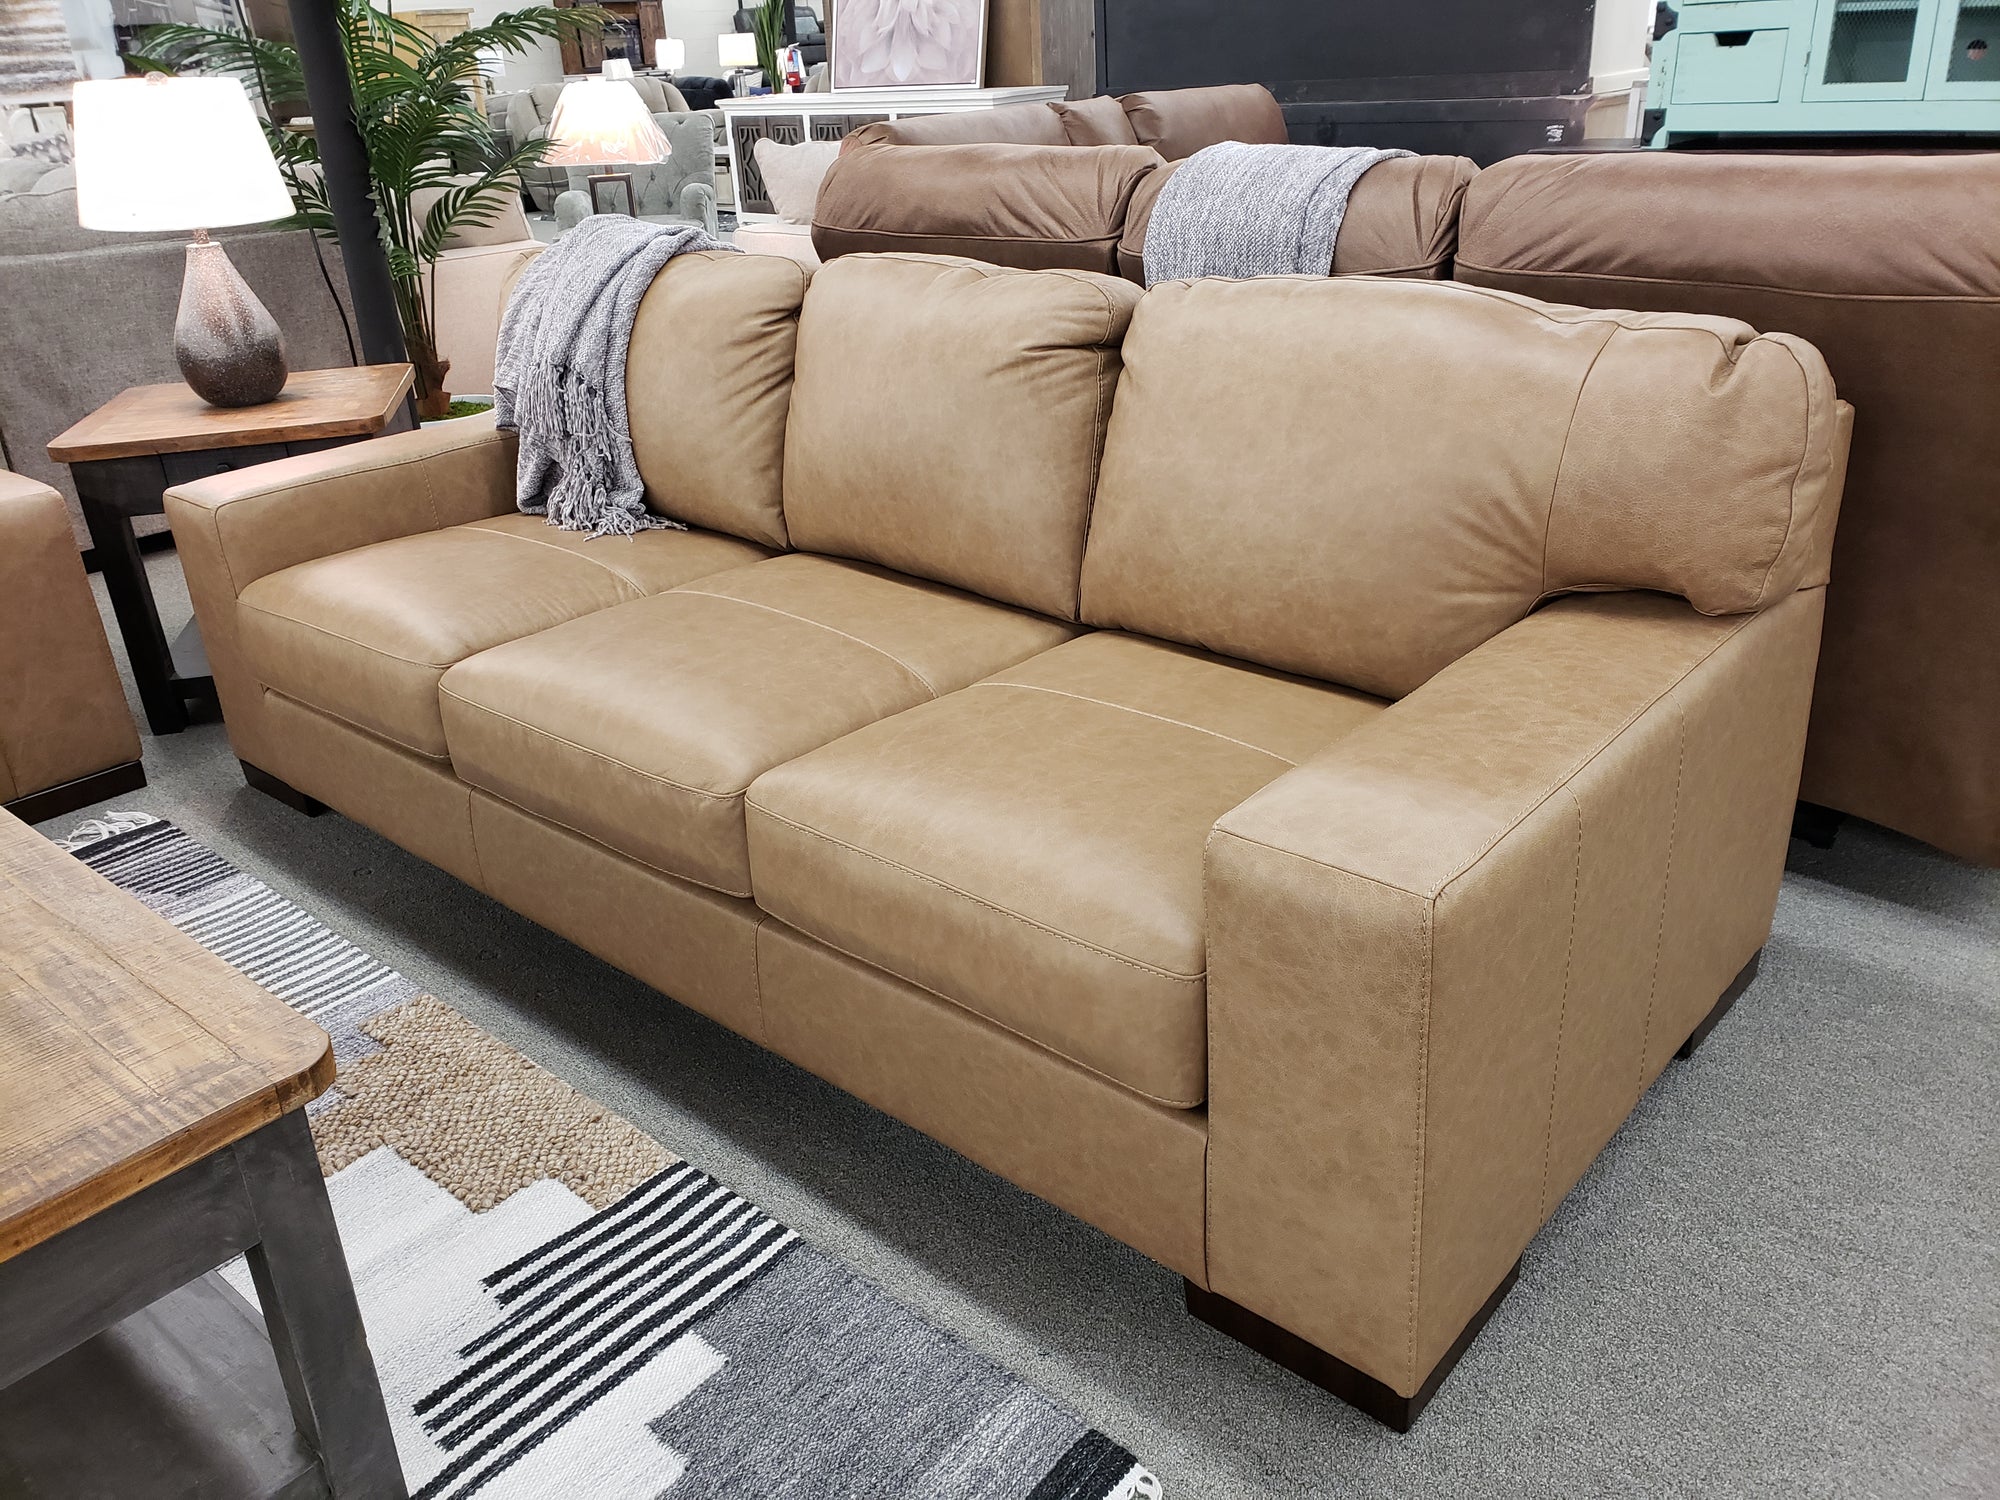 684 FI-A Leather Sofa & Loveseat